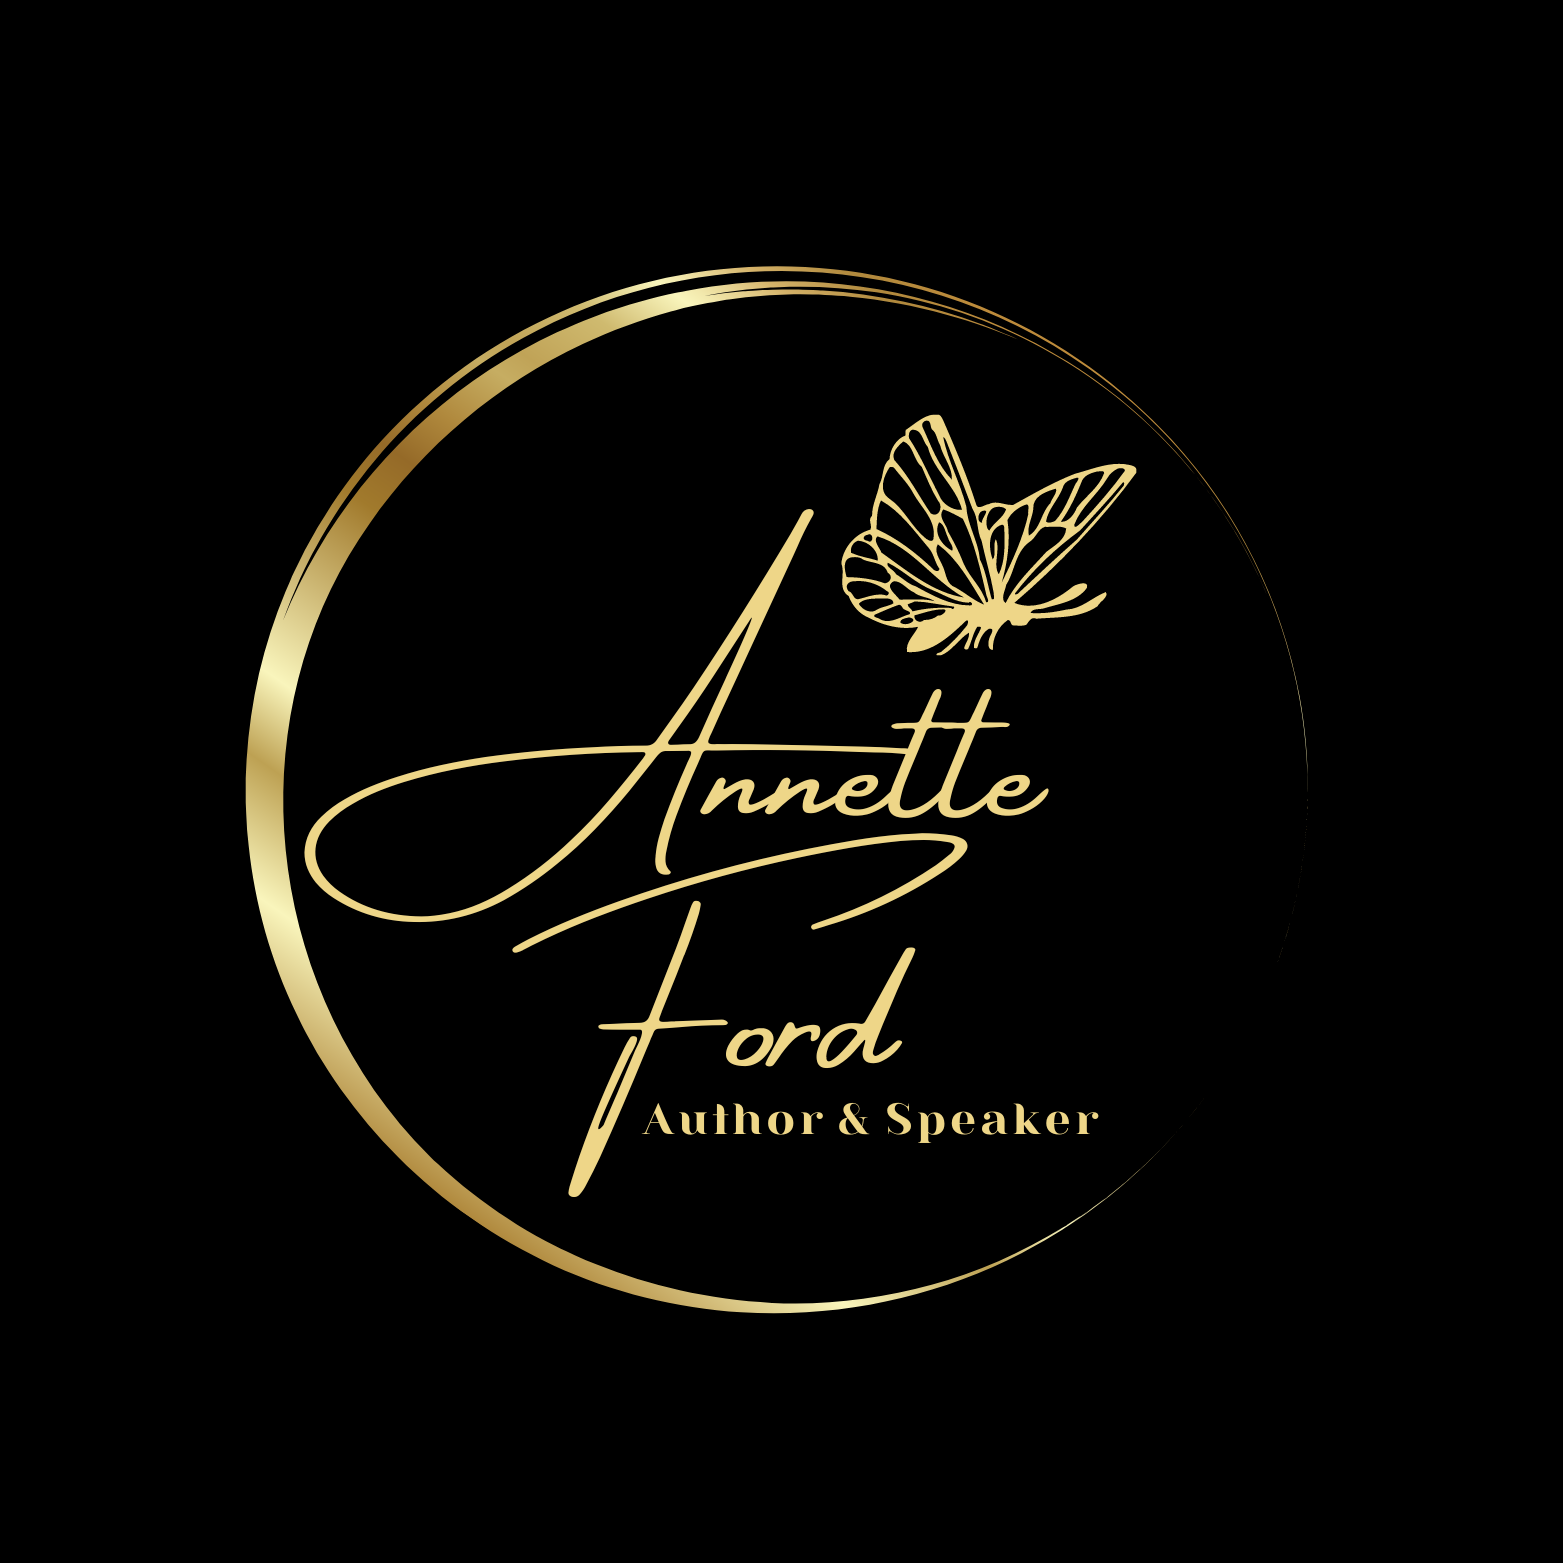 Annette Ford, Author & Speaker